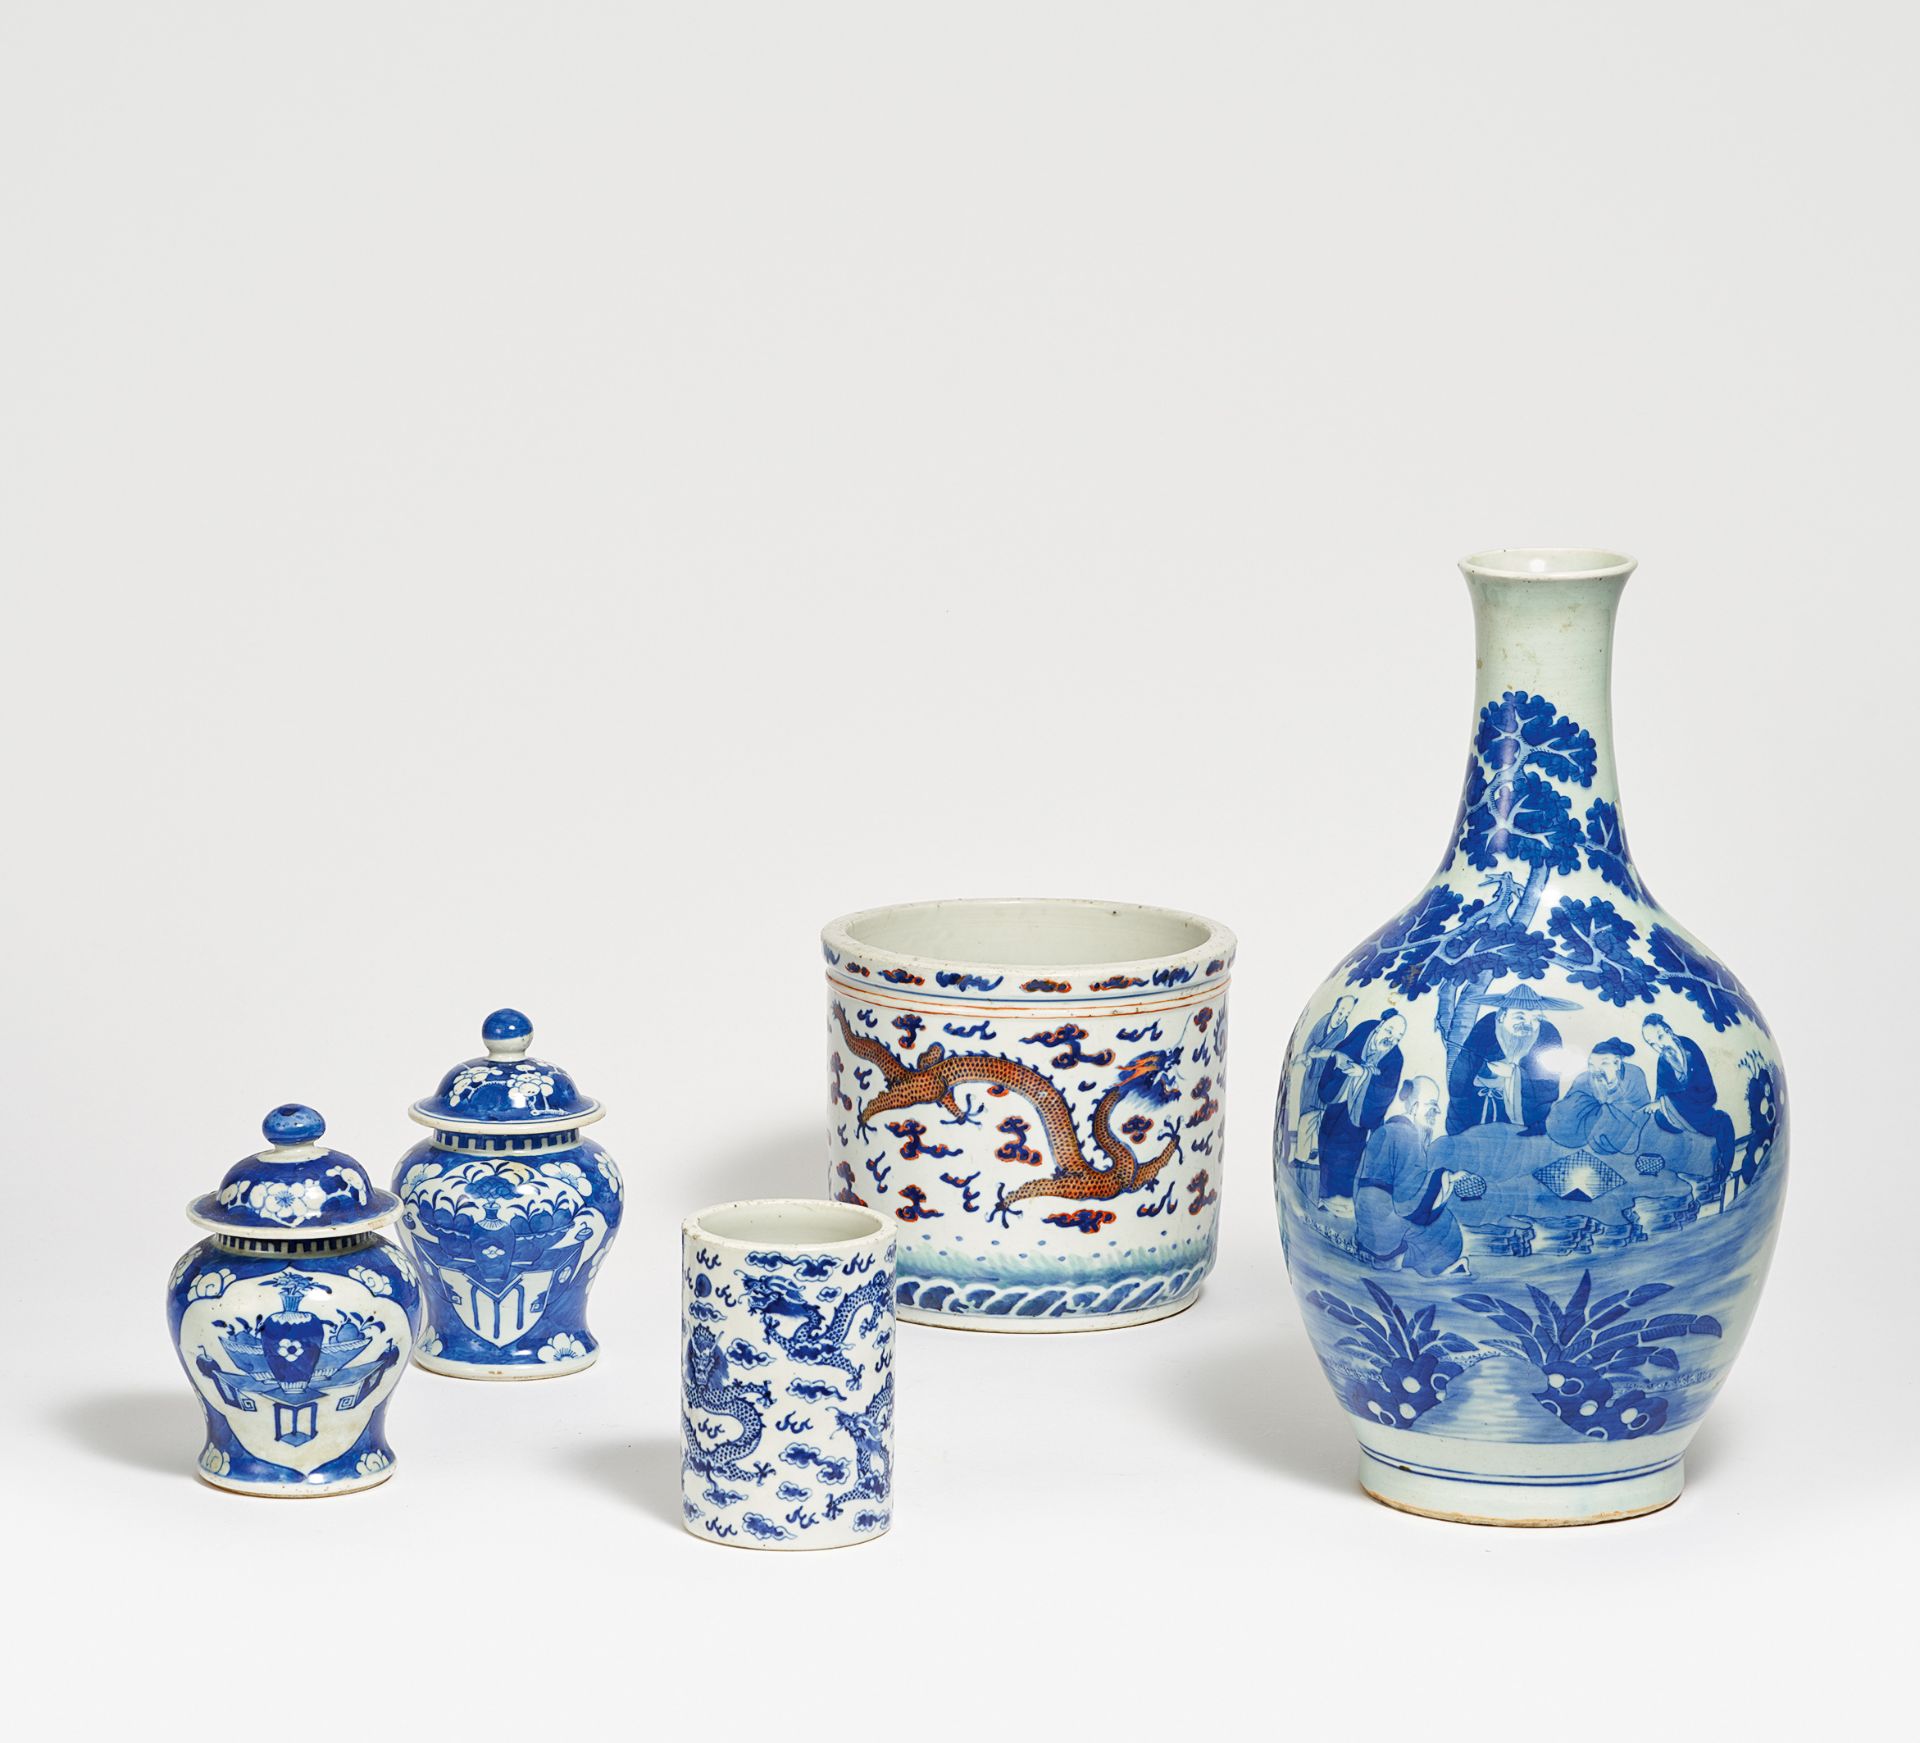 FIVE UNDERGLAZE BLUE PAINTED PORCELAIN PIECES. China. 19th-20th c. Porcelain. a) Brush pot with